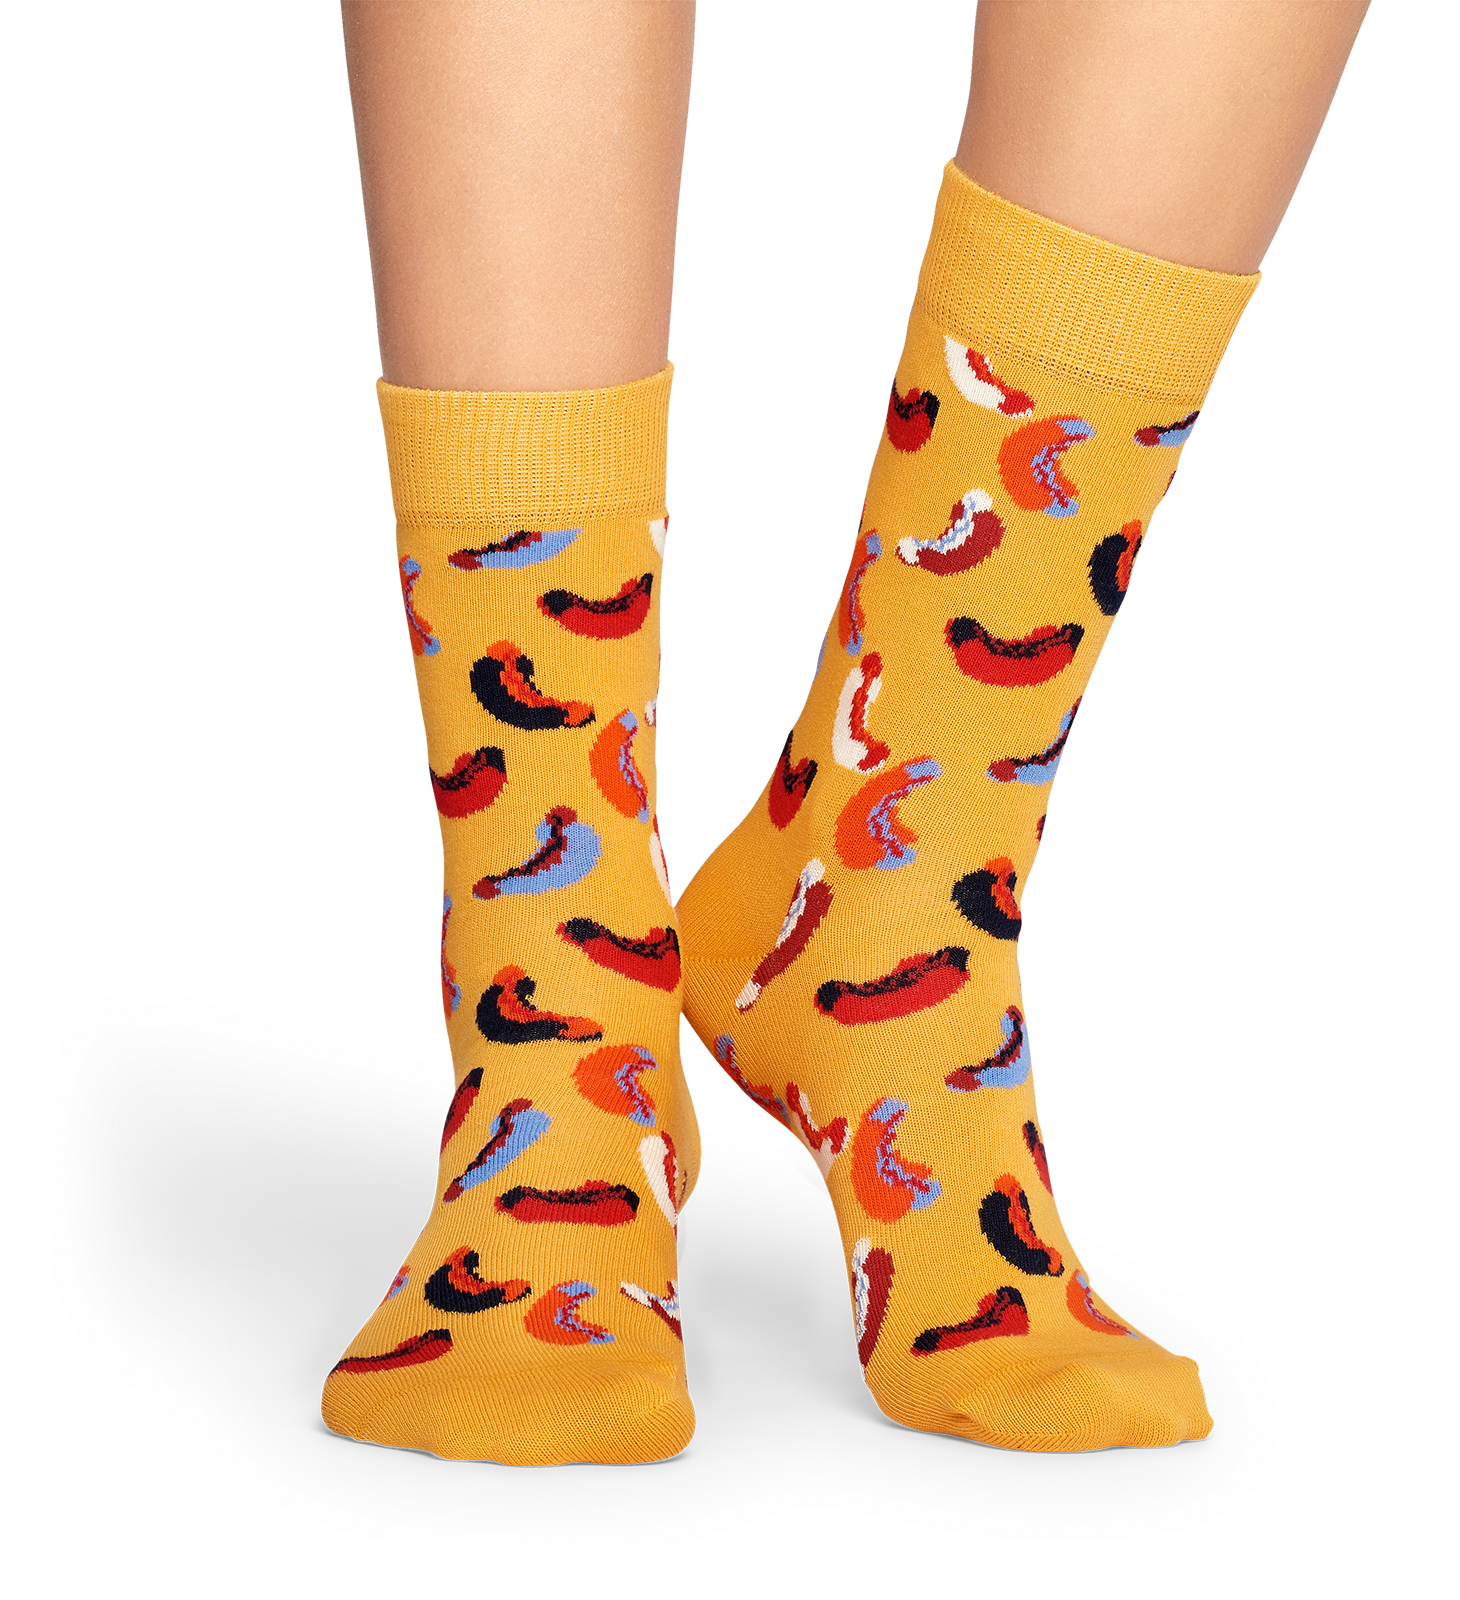 SALE NEW HAPPY SOCKS "Hotdog" Socks for Men 